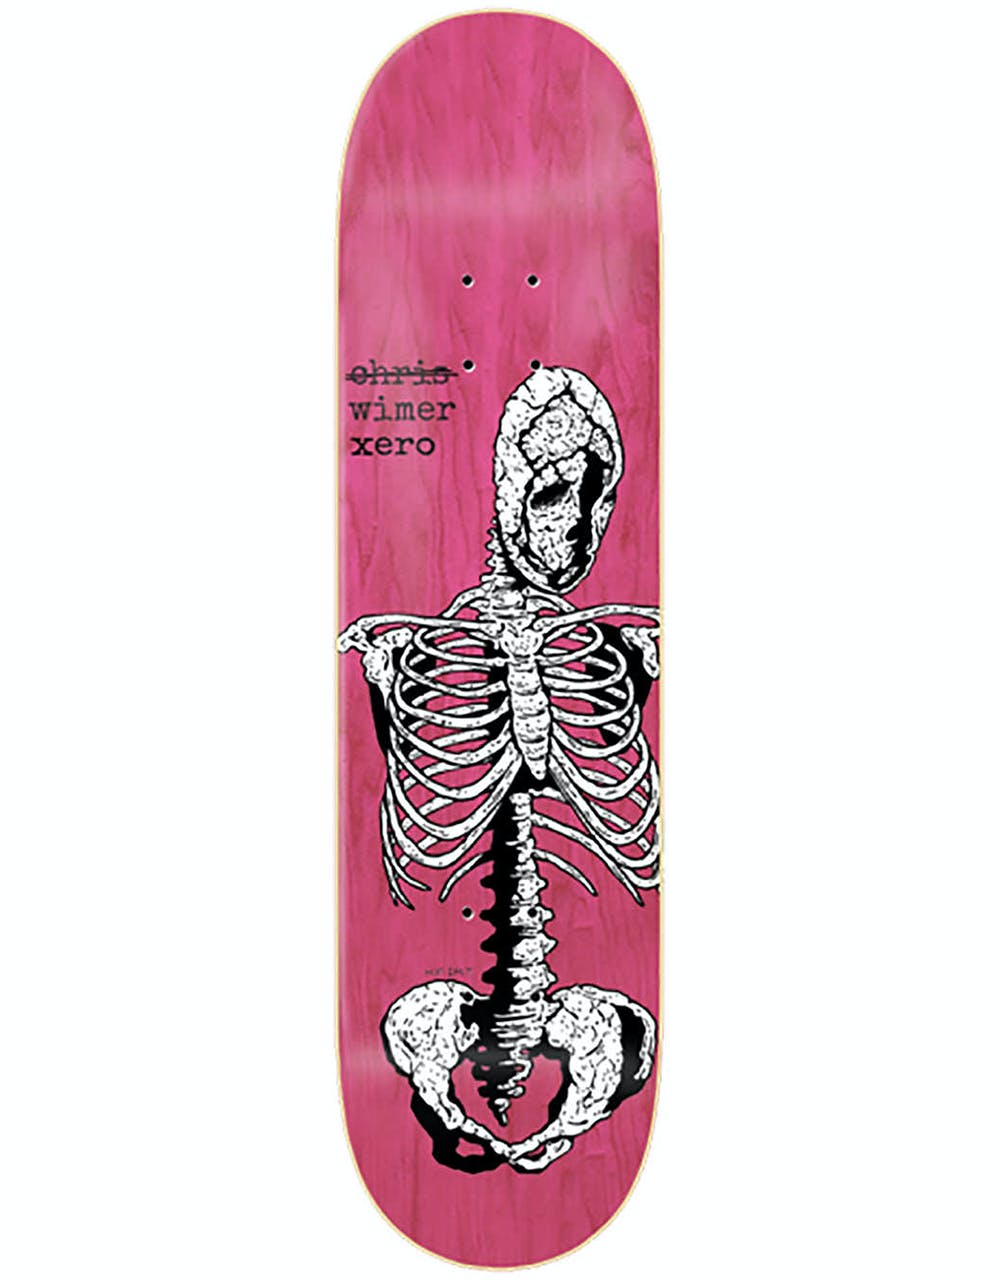 Zero Wimer Kfirt Skateboard Deck - 8.5"